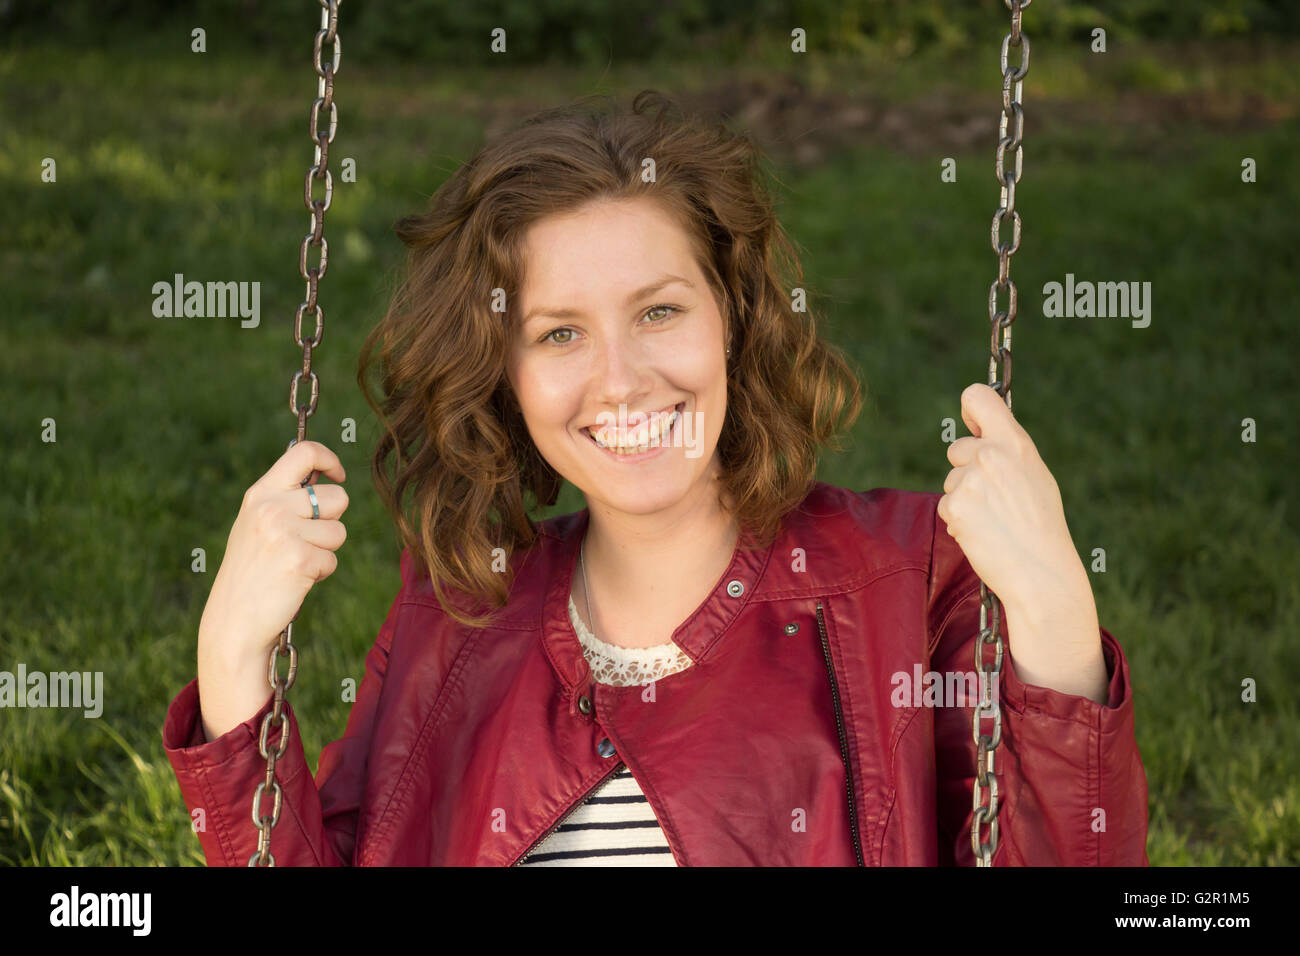 Sorriso ragazza ritratto, swing. Foto Stock